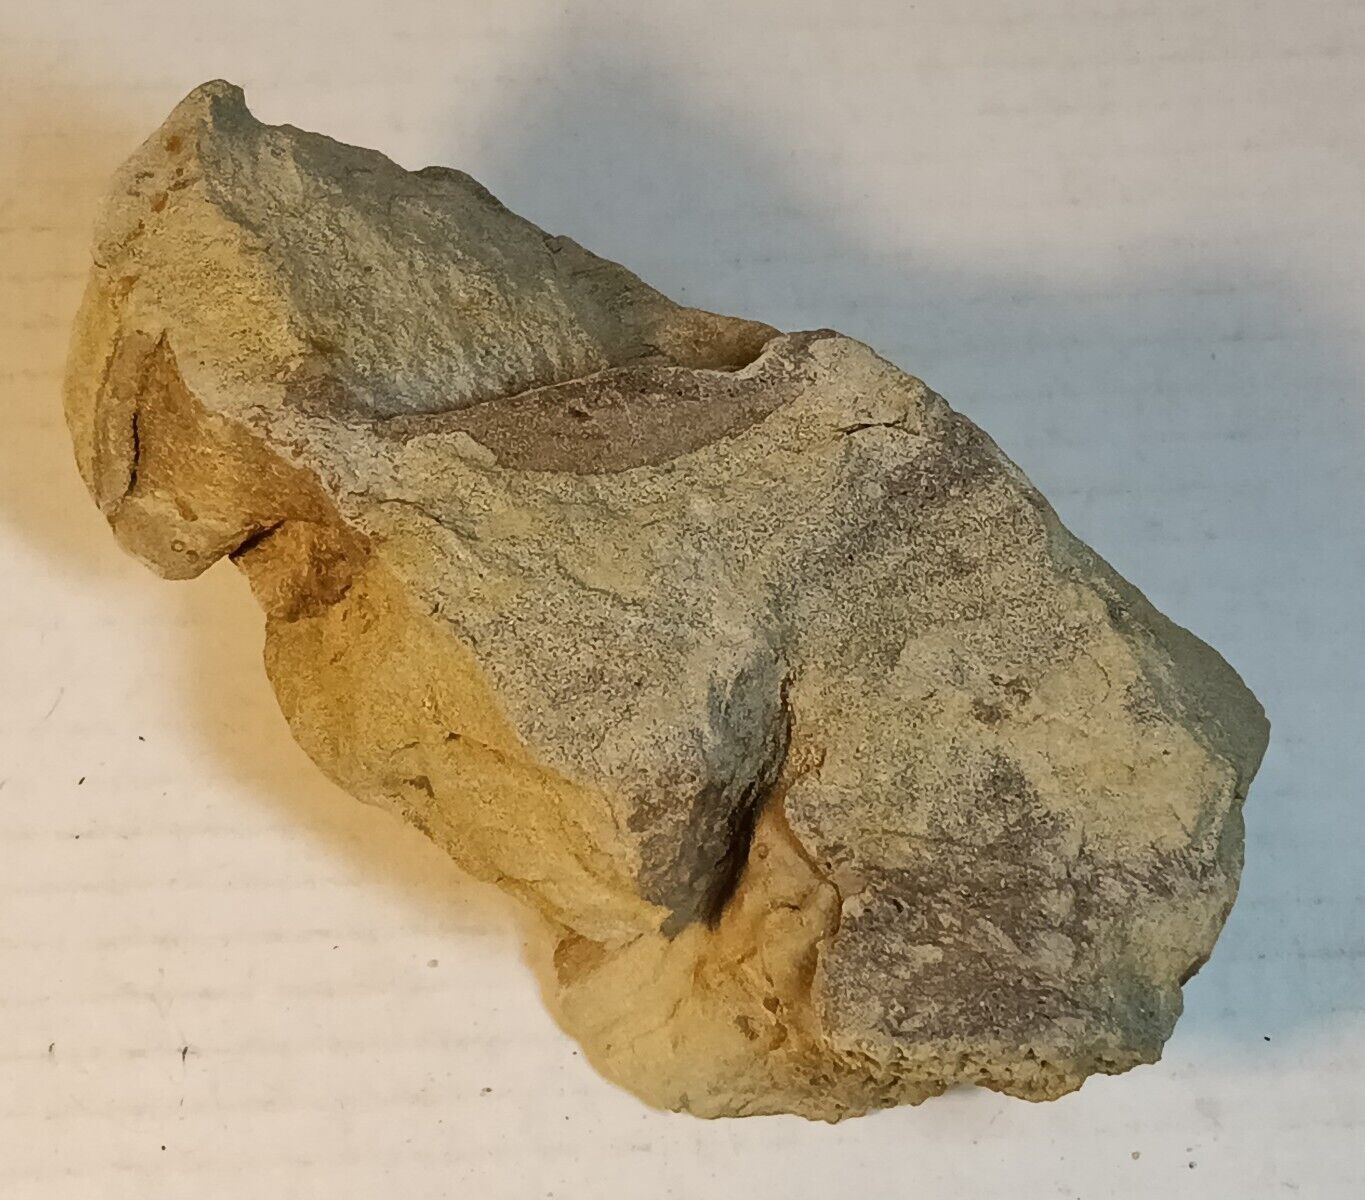 Leaf Fossils in Sandstone 29 oz Elk Basin Carbon County Montana Rock Gem Mineral